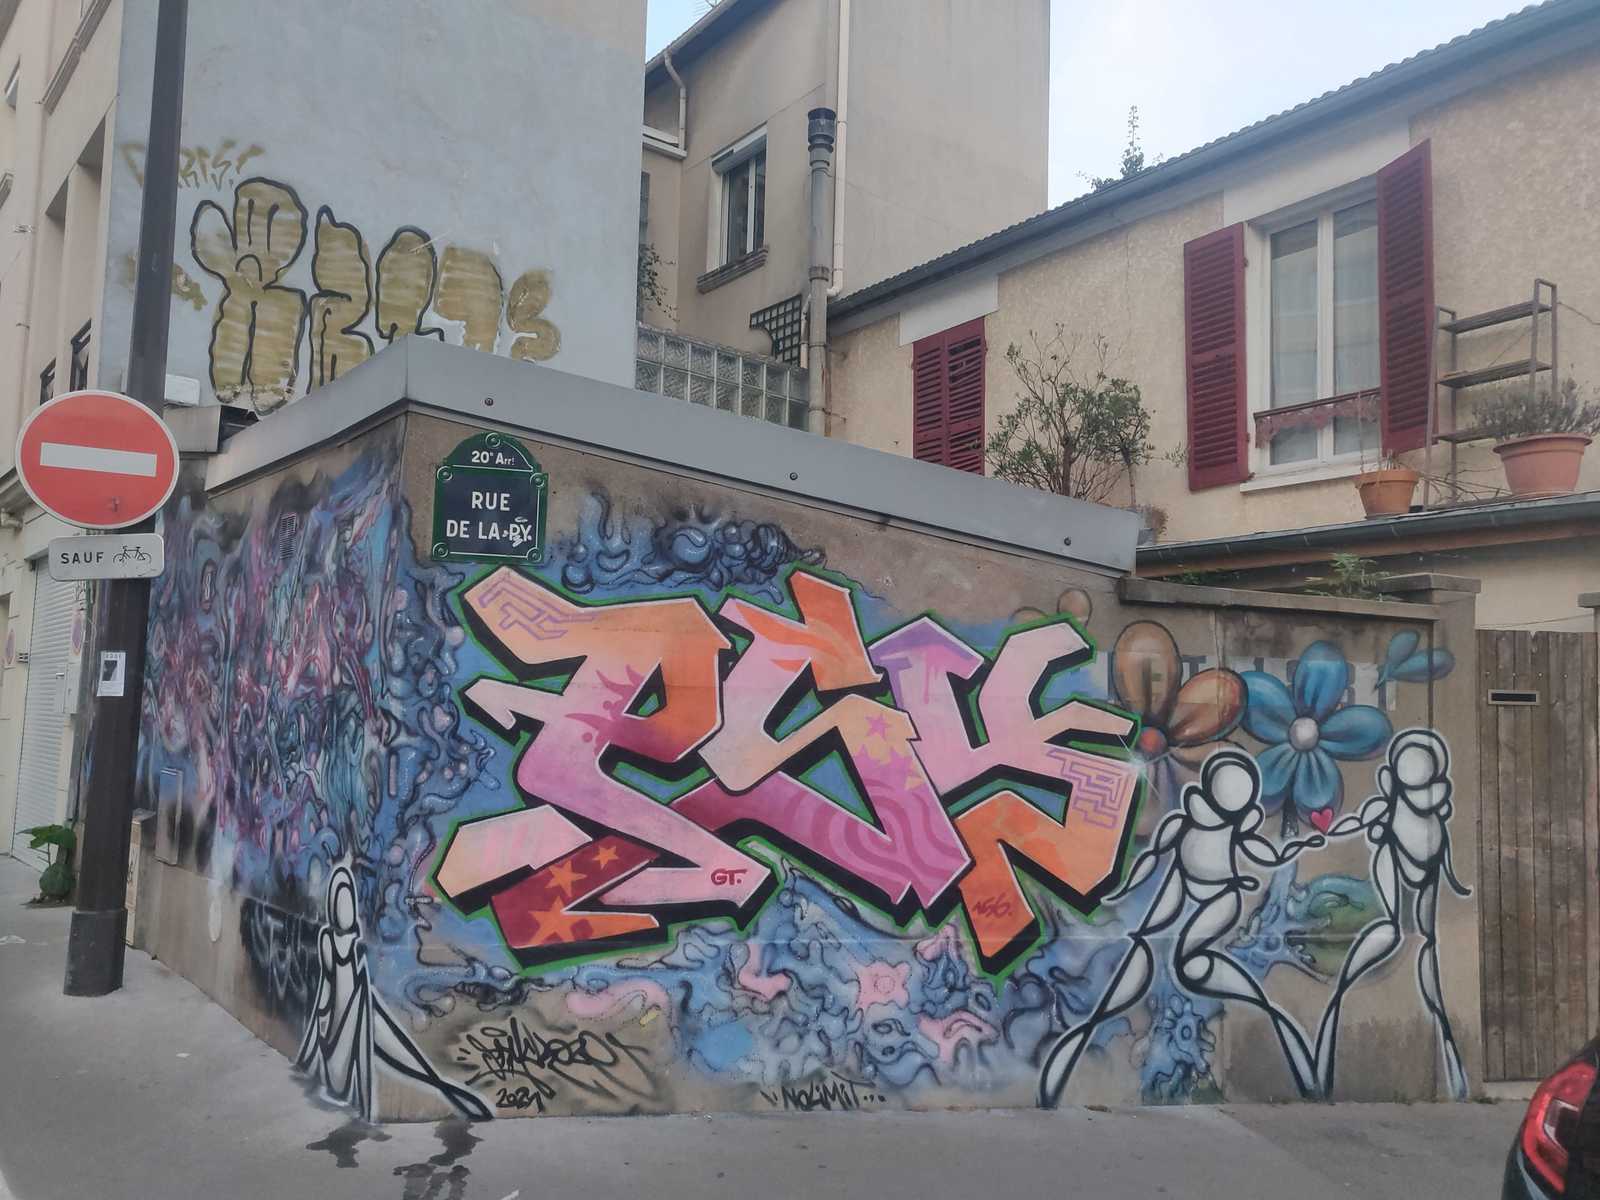 Graffiti von PSY, Graffiti- Crew156, GT (GrimTeam), einprägsame, einfach geschwungene Figuren, Rue de Laby 20. Bezirk von Paris, Frankreich, Subkultur Graffiti HipHop LadyK